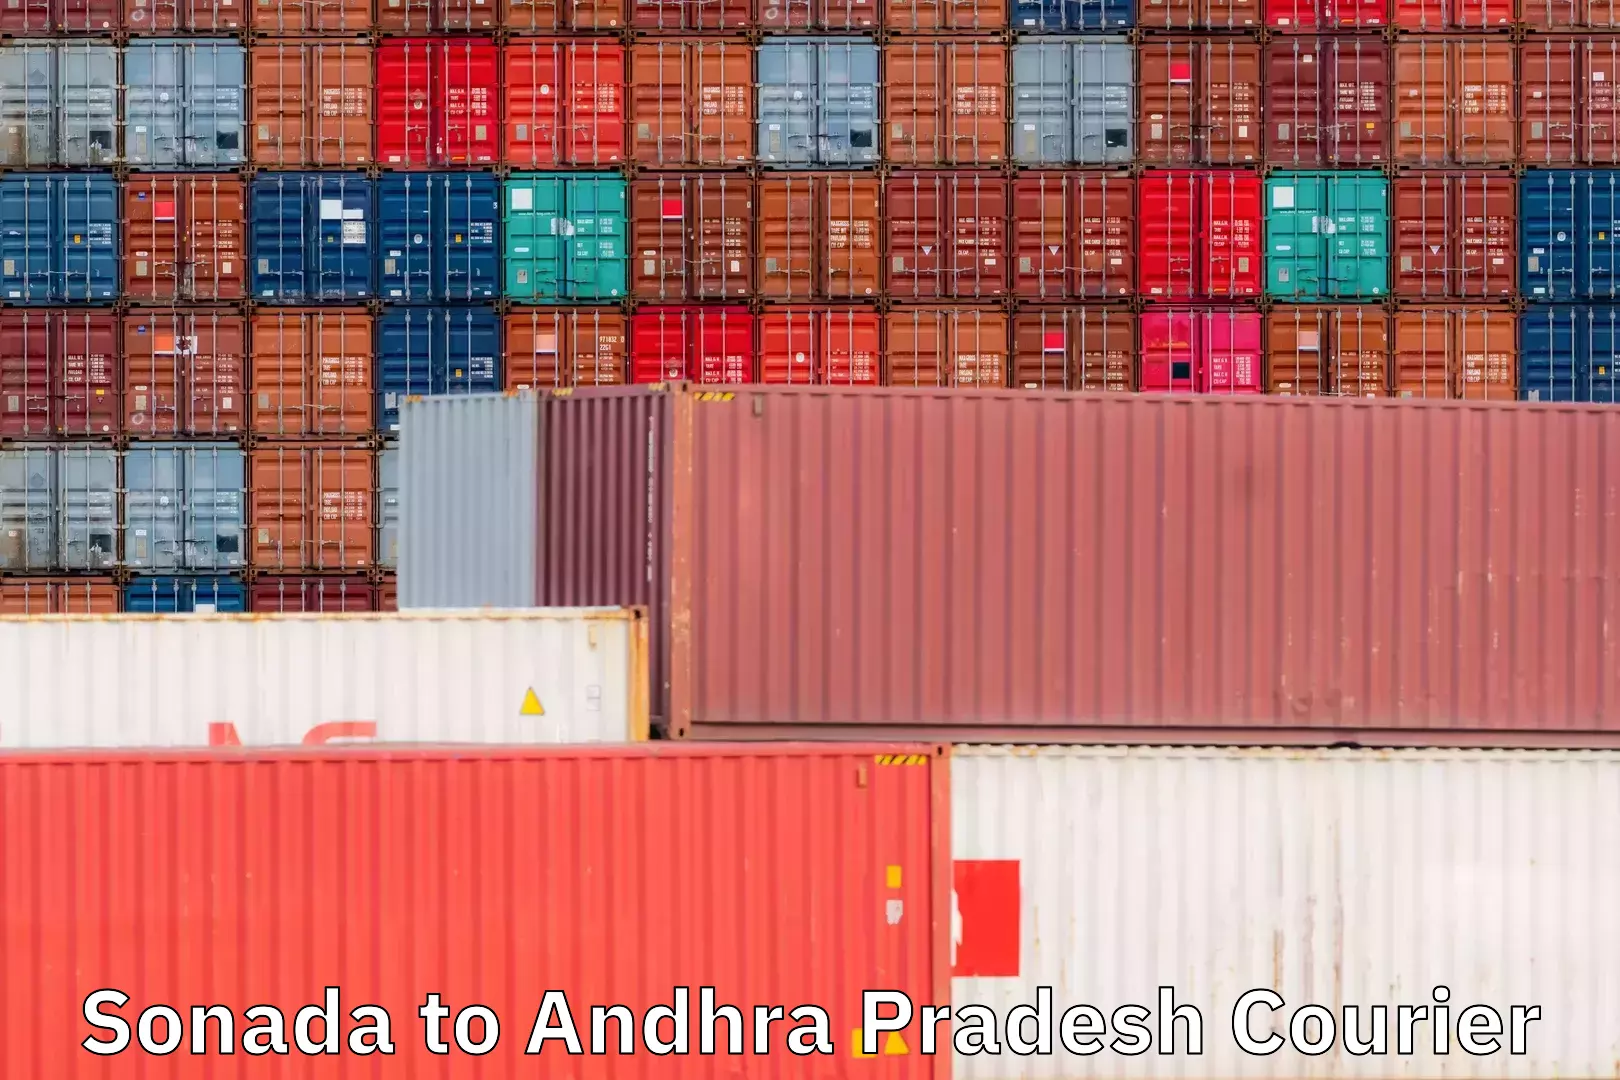 Medical delivery services Sonada to Andhra Pradesh